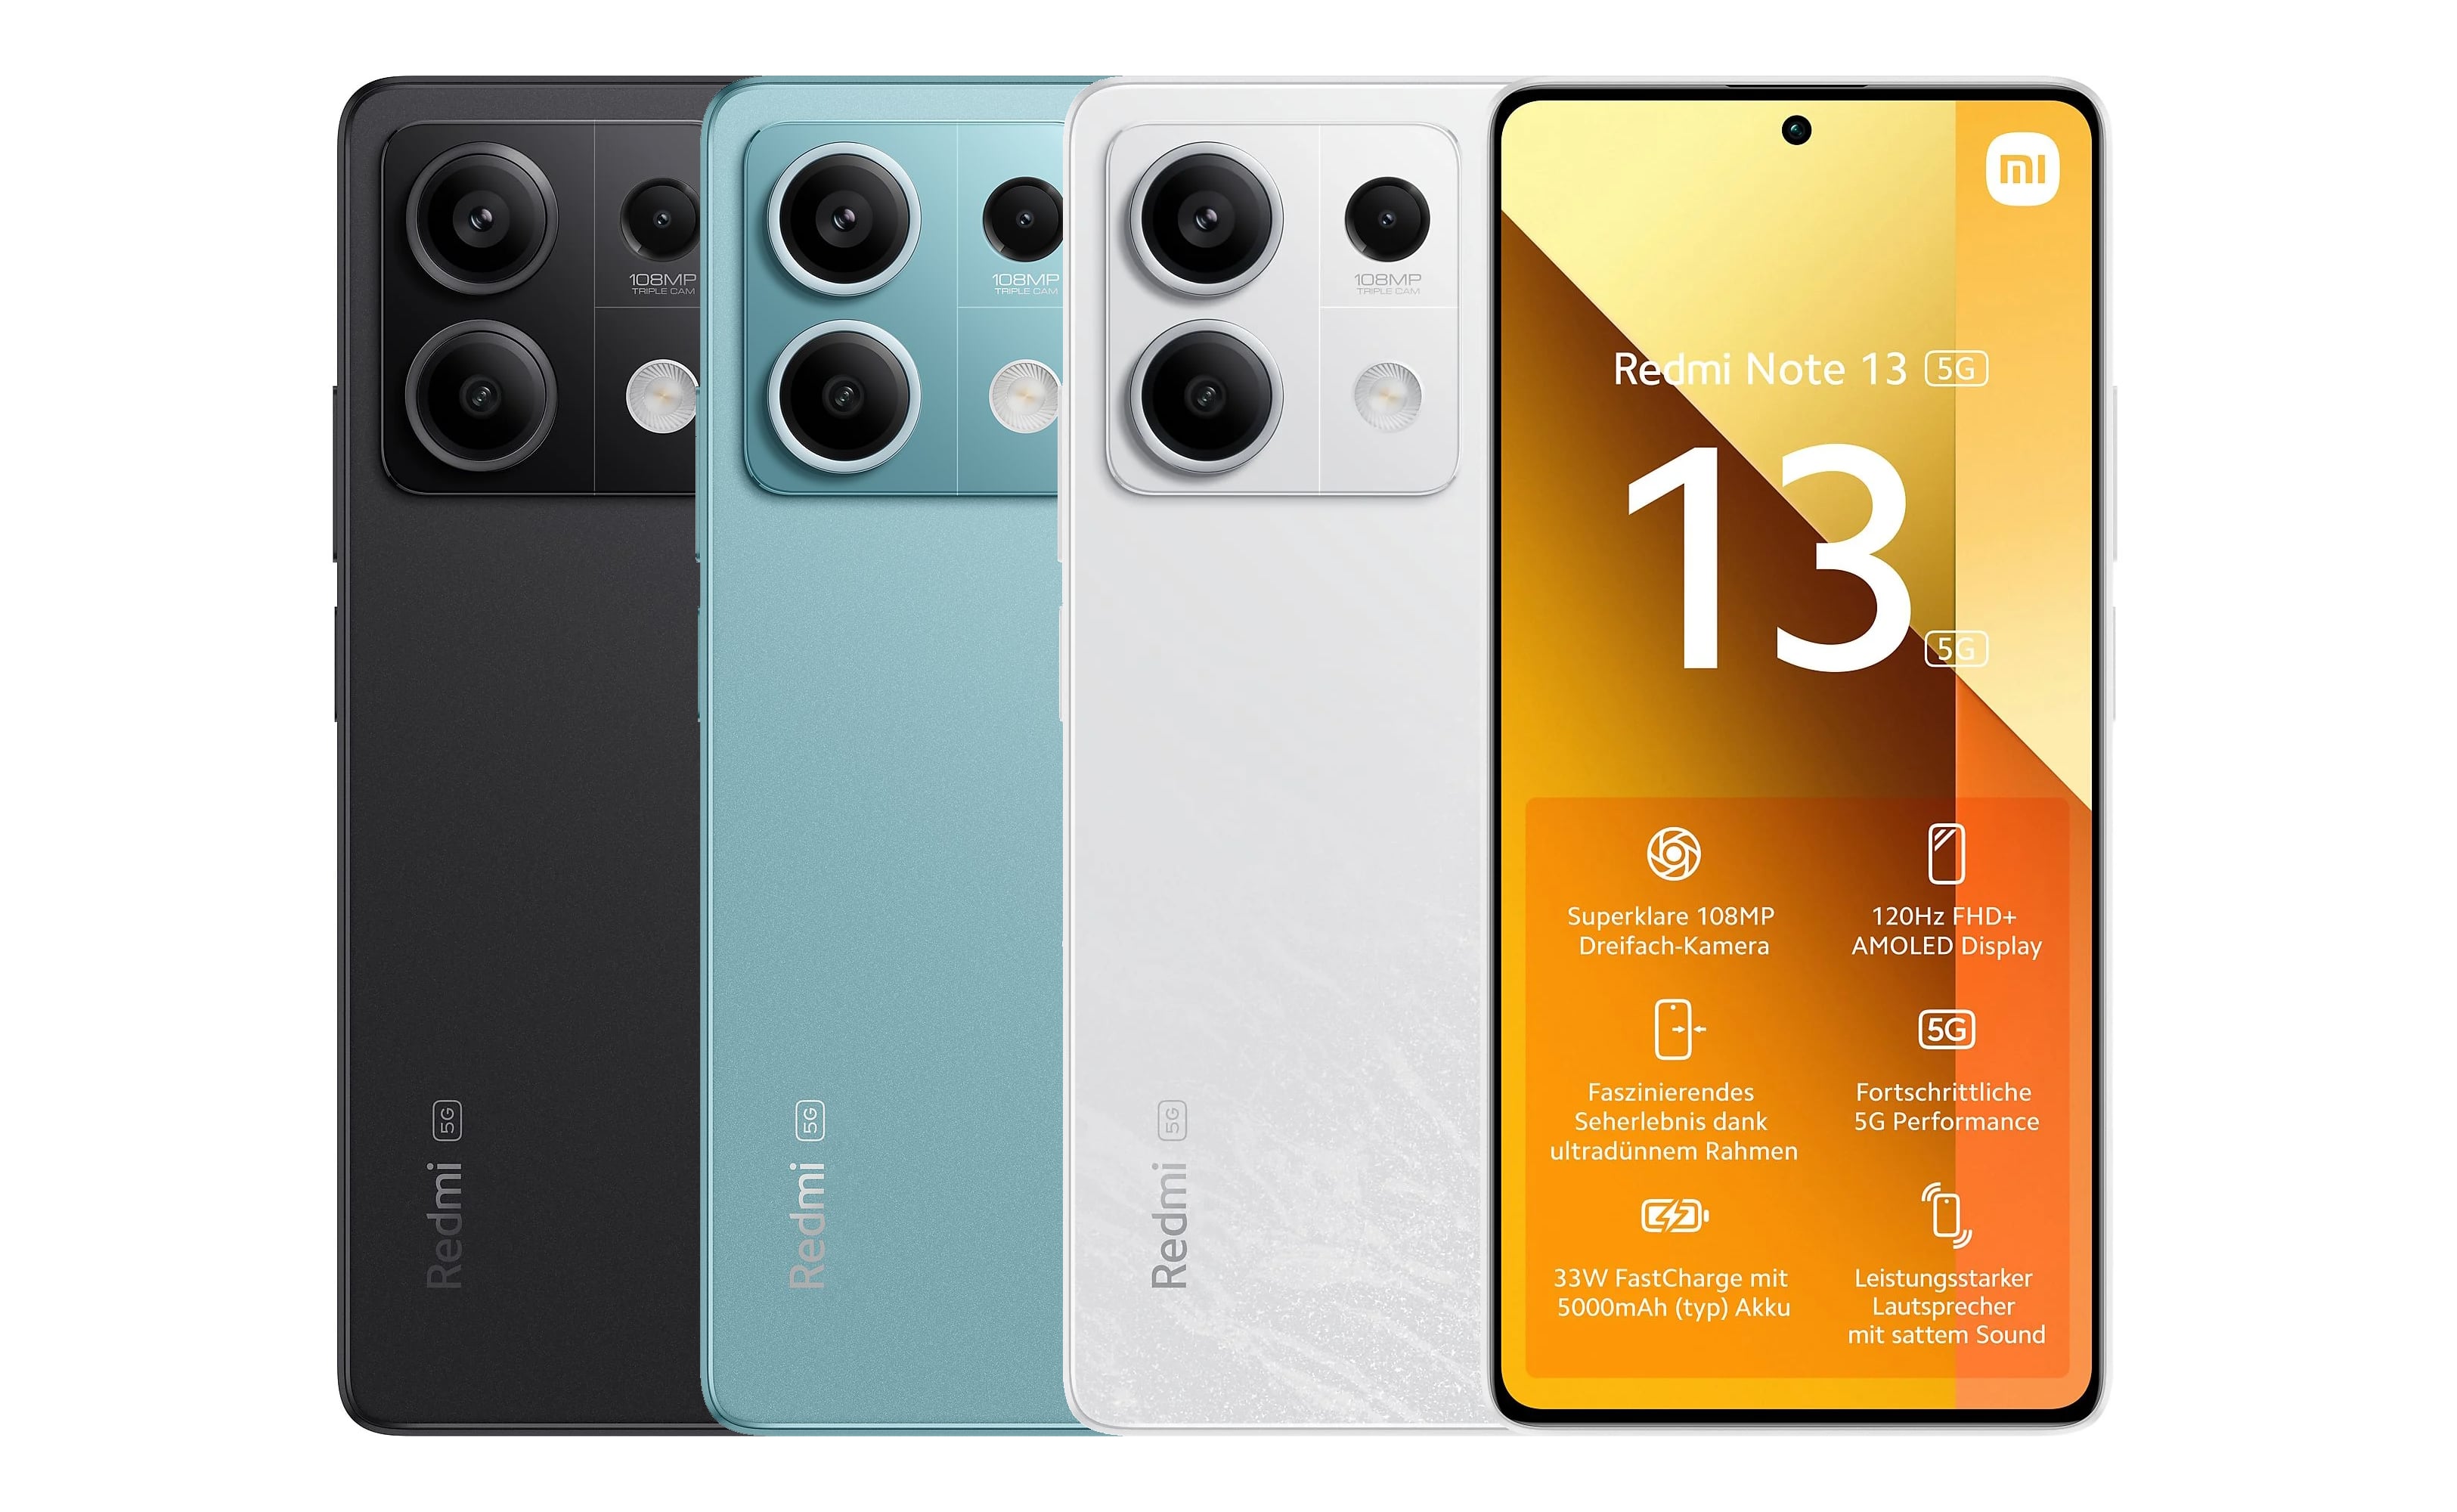 Xiaomi Redmi Note 13 5G mit Vertrag in den Netzen von Telekom, Vodafone, o2 Telefónica und 1&1